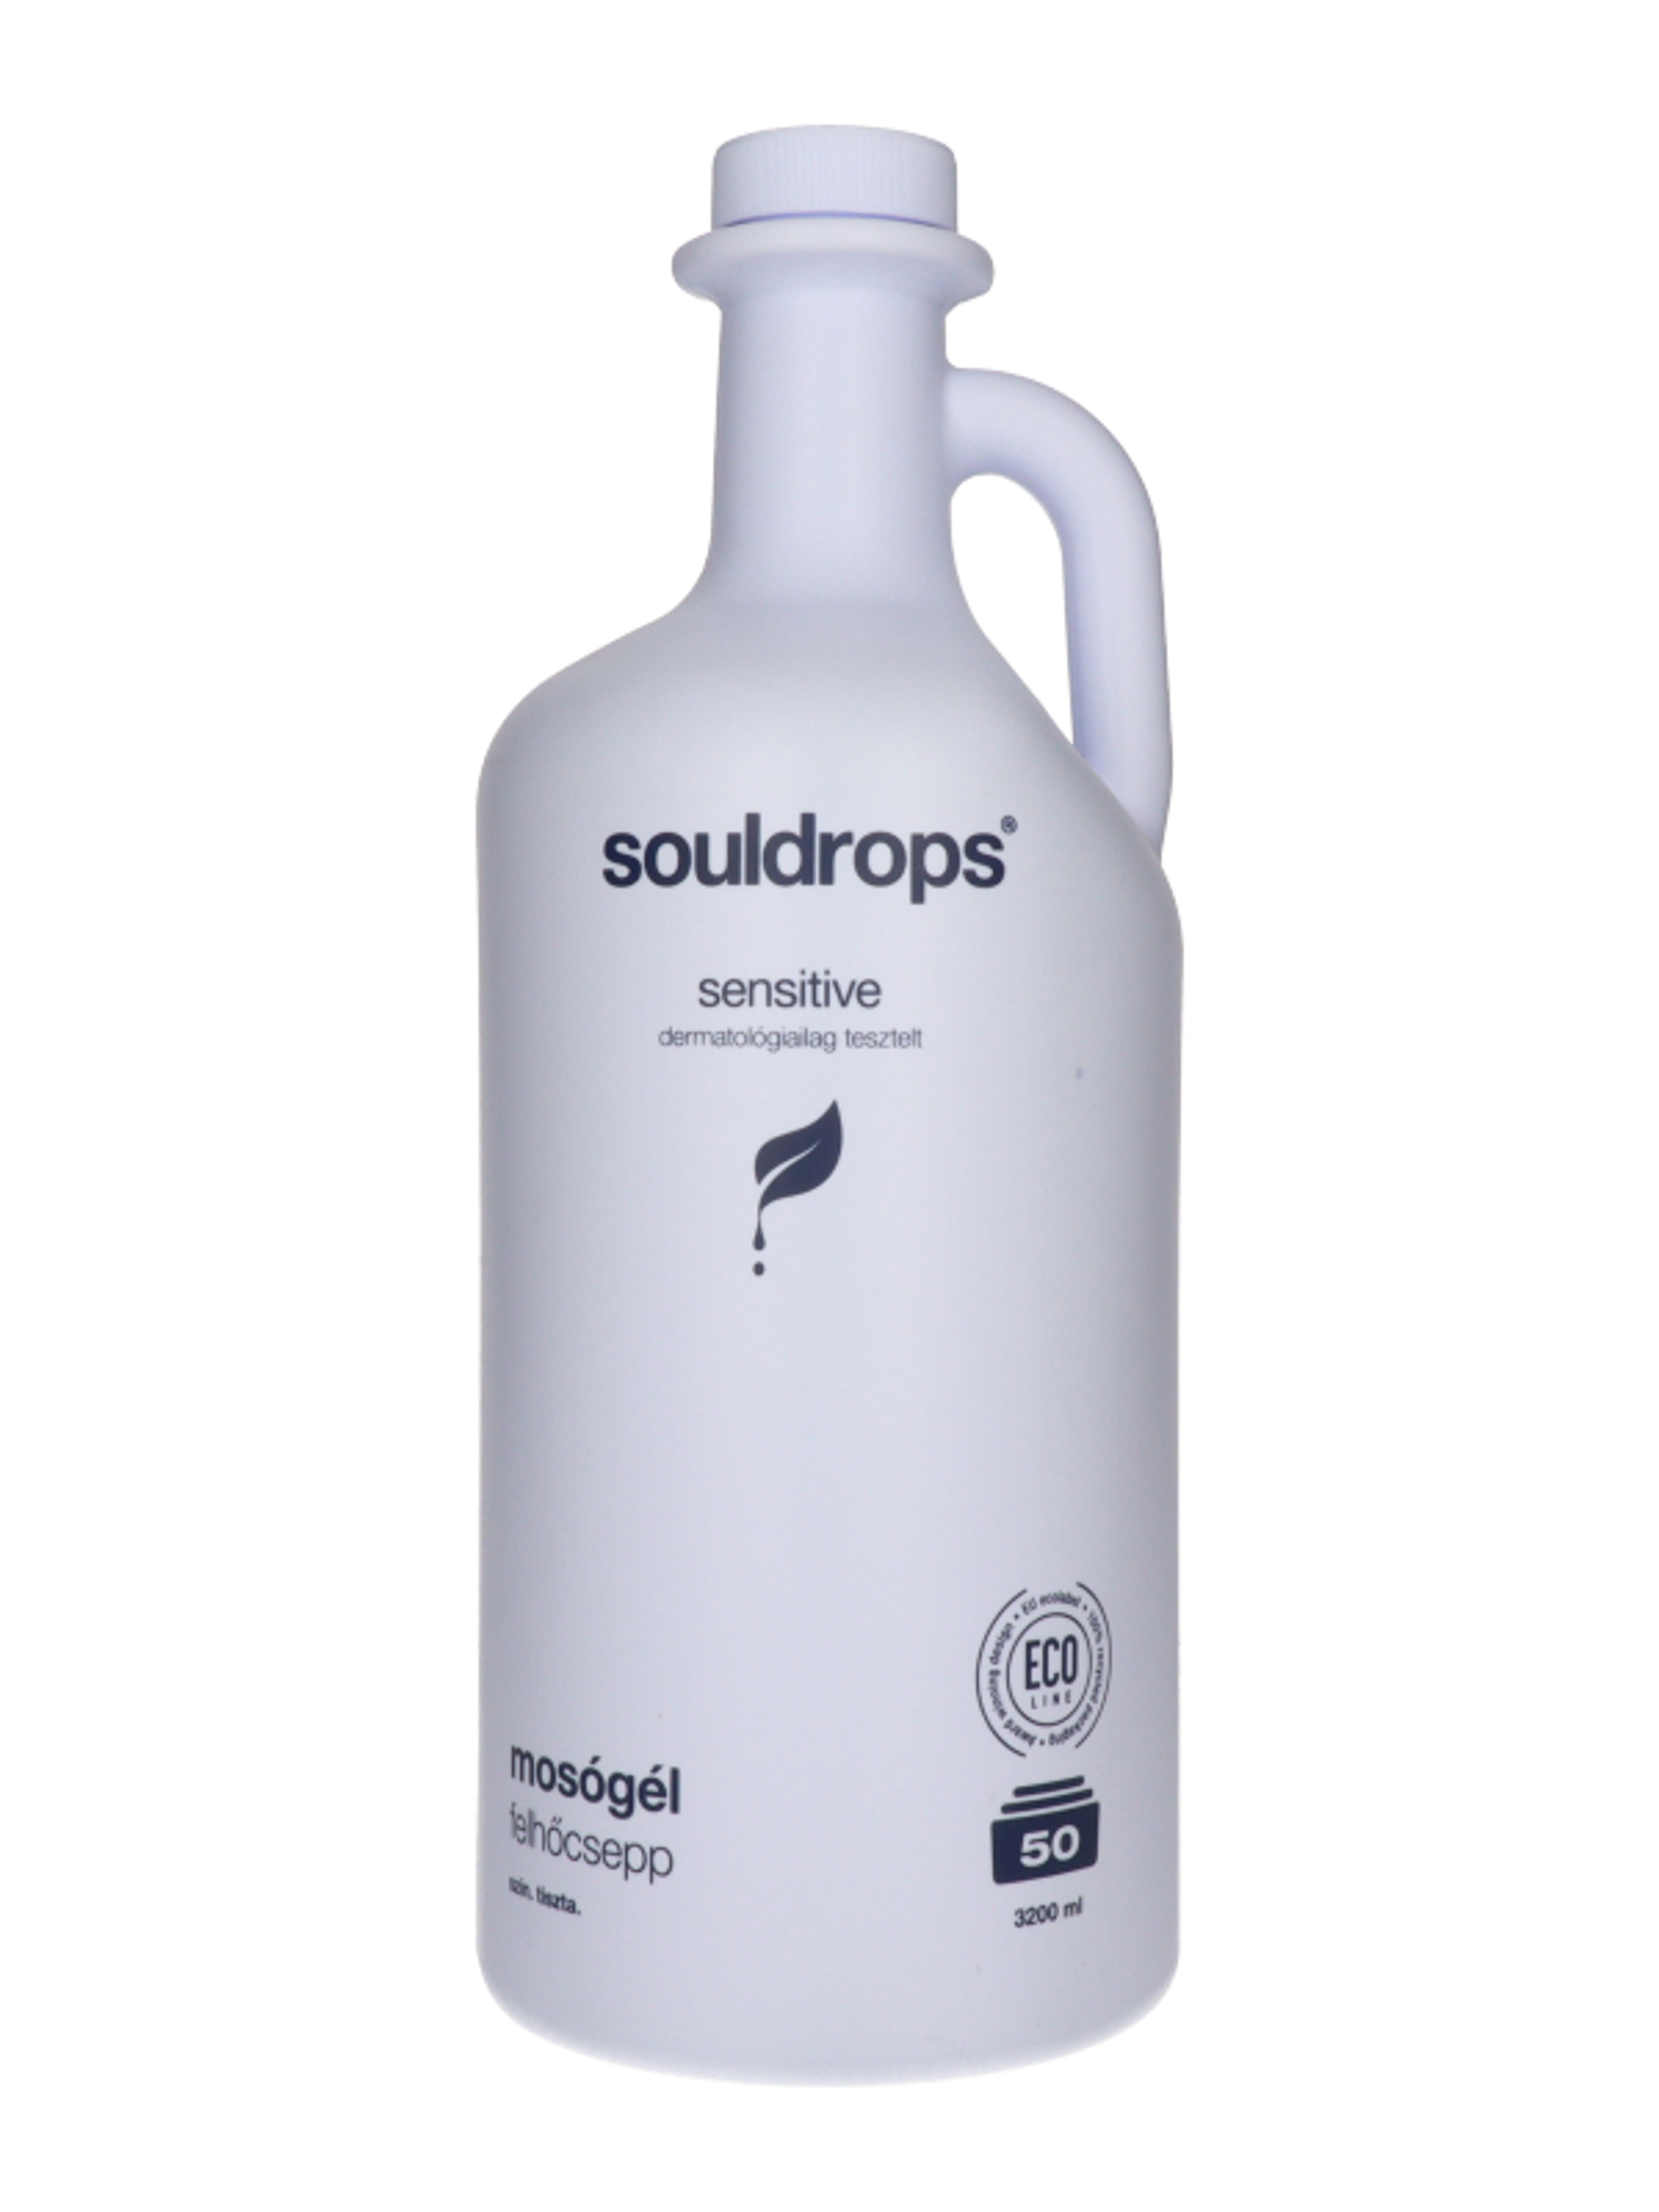 Souldrops Felhőcsepp szenzitív mosógél 50 mosás - 3200 ml